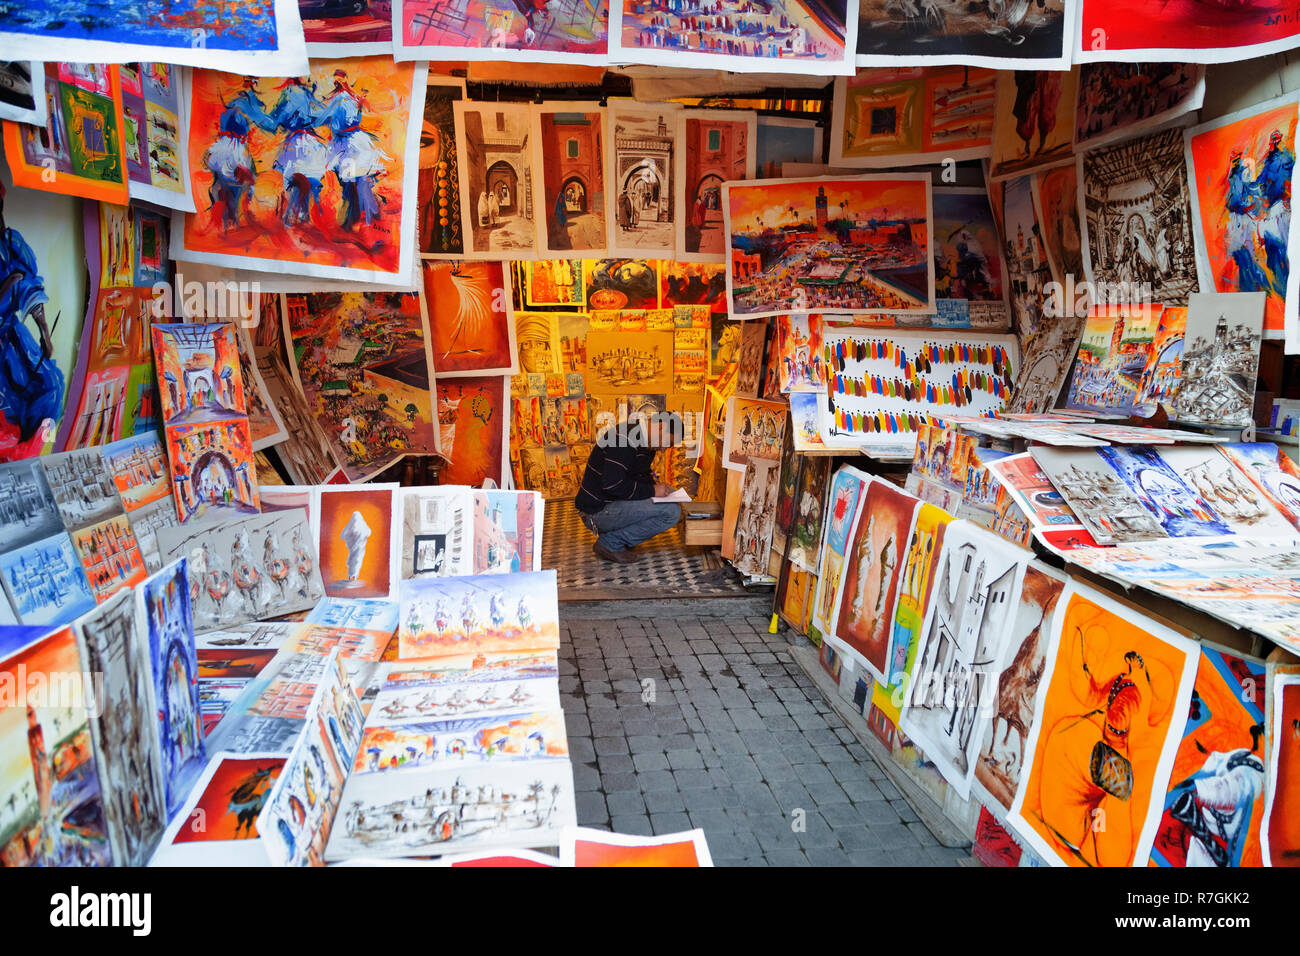 Souk de Marrakech - un commerçant vendant des images colorées et des peintures dans une échoppe de marché dans les souks, Médina de Marrakech, Marrakech, Maroc Afrique du Nord Banque D'Images